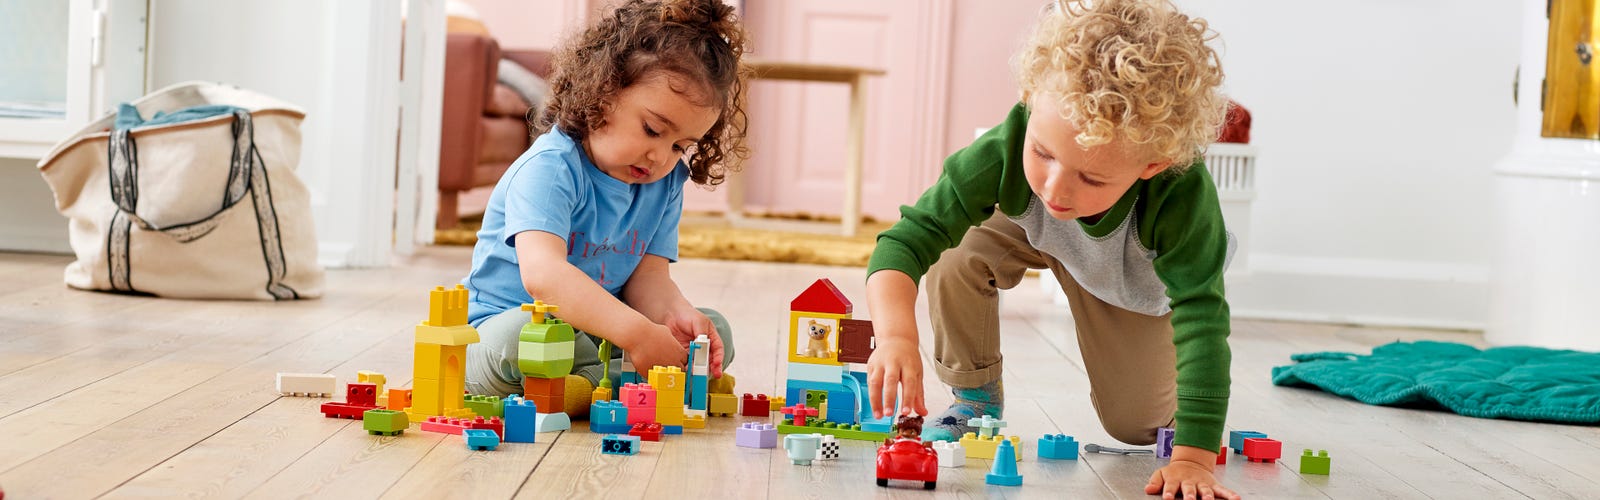 Lego lança brinquedo para meninas